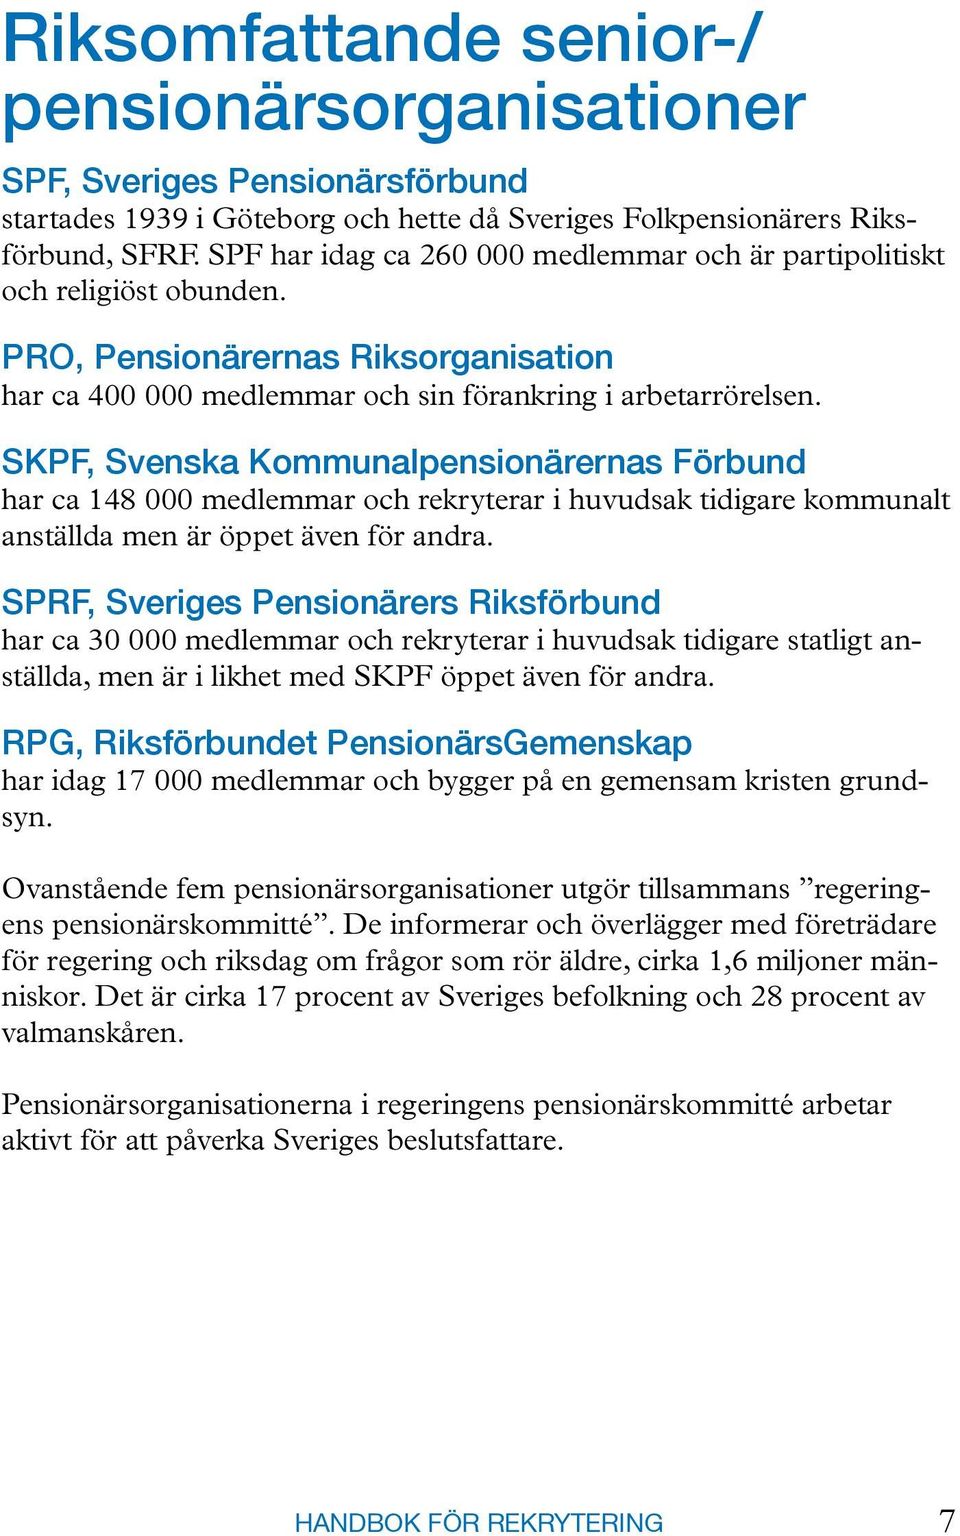 SKPF, Svenska Kommunalpensionärernas Förbund har ca 148 000 medlemmar och rekryterar i huvudsak tidigare kommunalt anställda men är öppet även för andra.